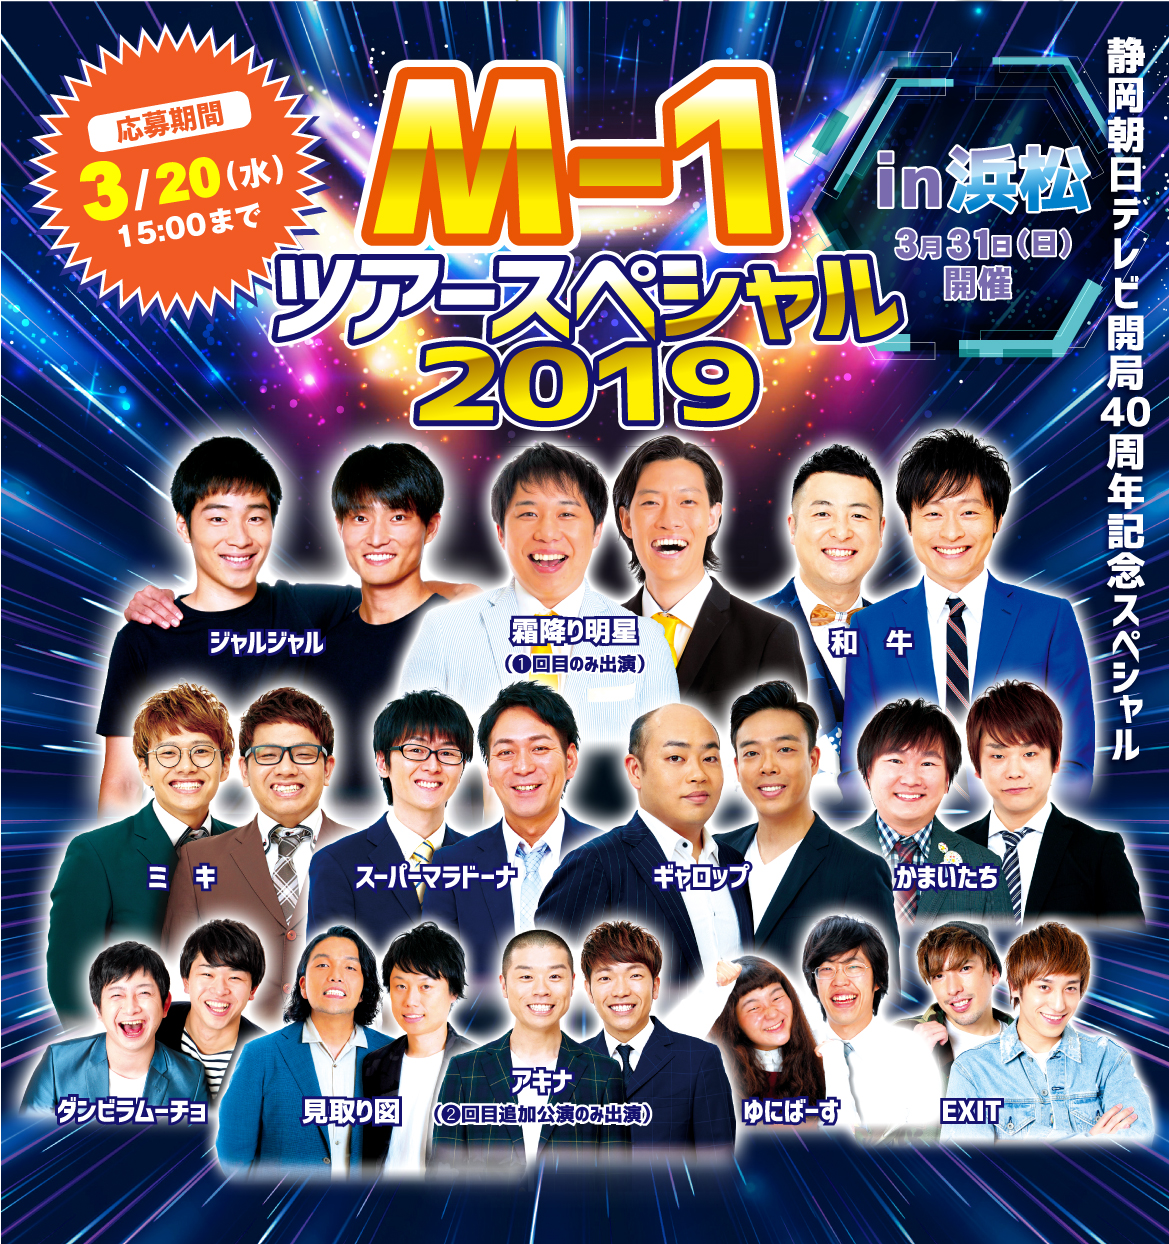 アプリ限定 M 1ツアースペシャル19 In 浜松 チケットプレゼントキャンペーン Tlcポイントサイト